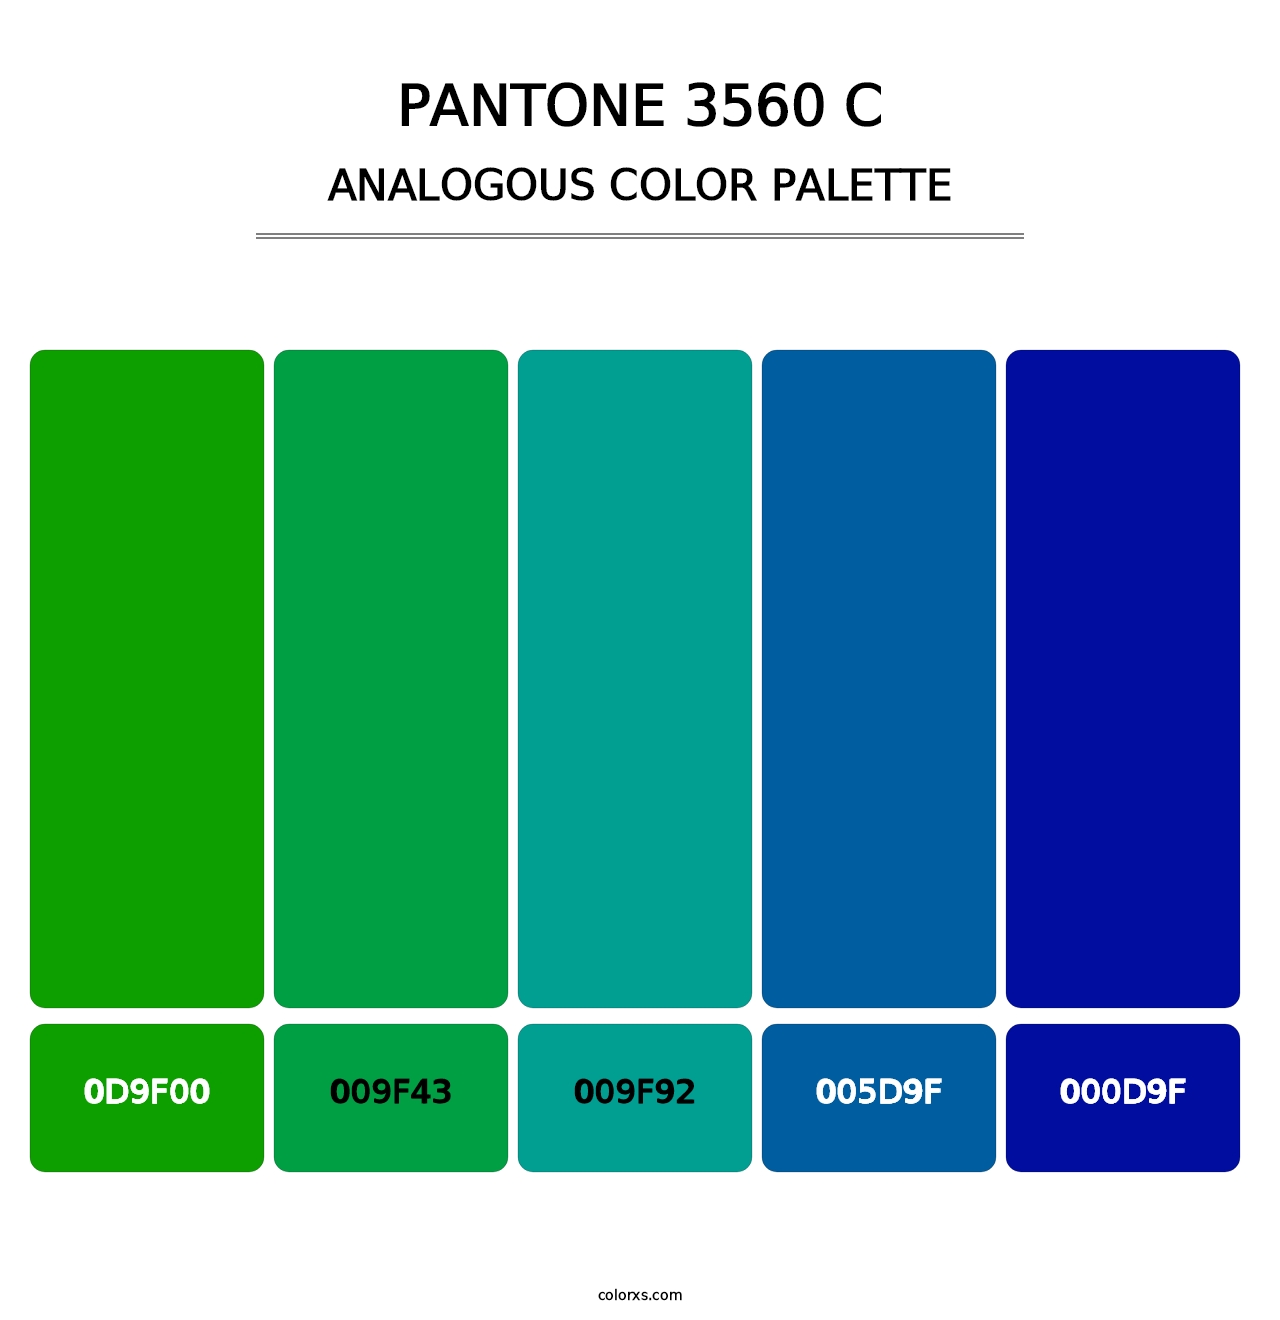 PANTONE 3560 C - Analogous Color Palette